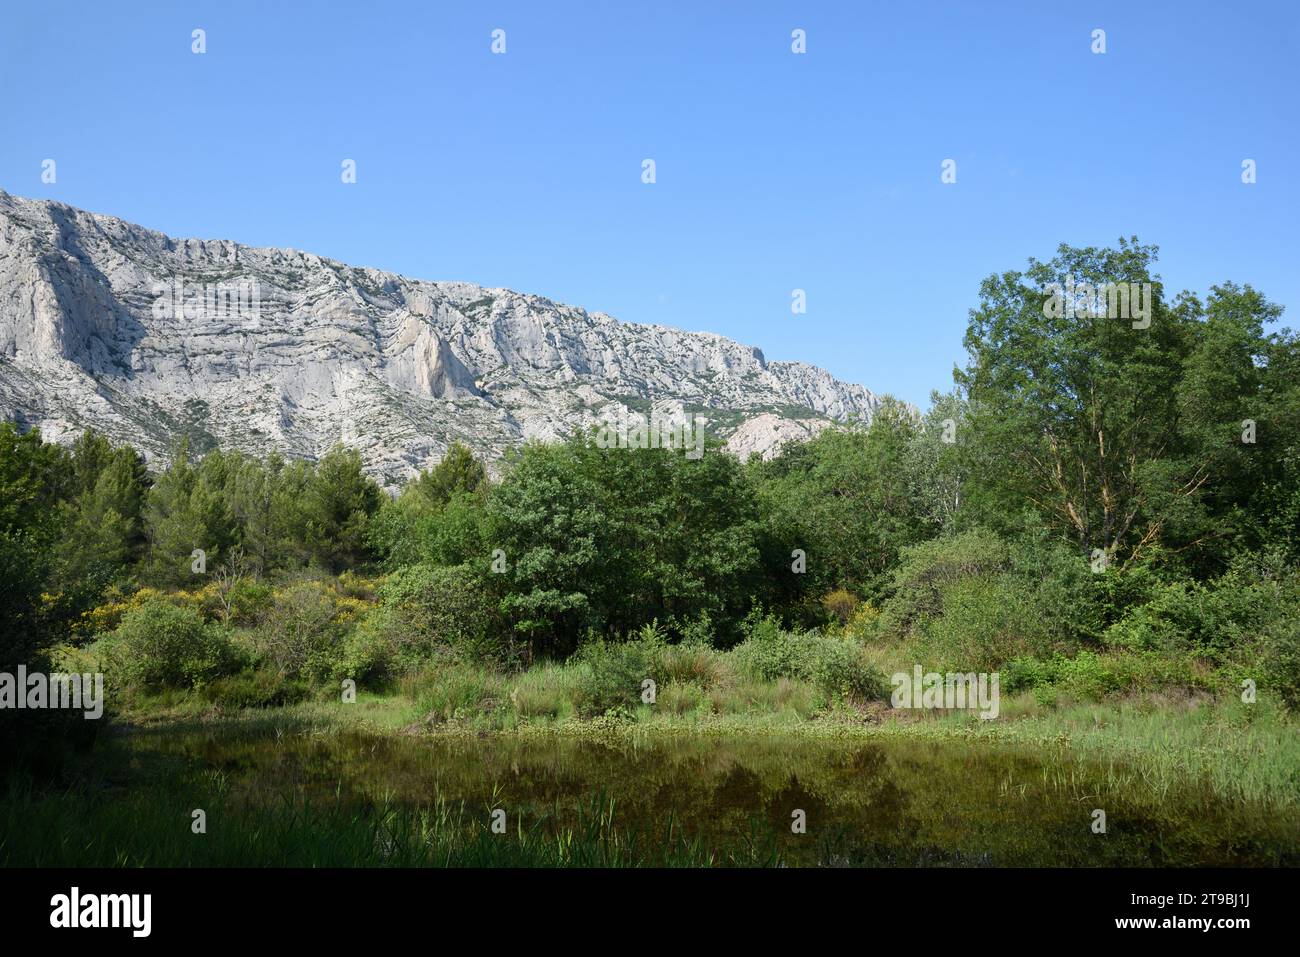 Teich, Naturpool, Etang oder kleiner See und Schilfbetten vor dem Berg Montagne Sainte Victoire oder Naturschutzgebiet in der Nähe von Aix-en-Provence Frankreich Stockfoto